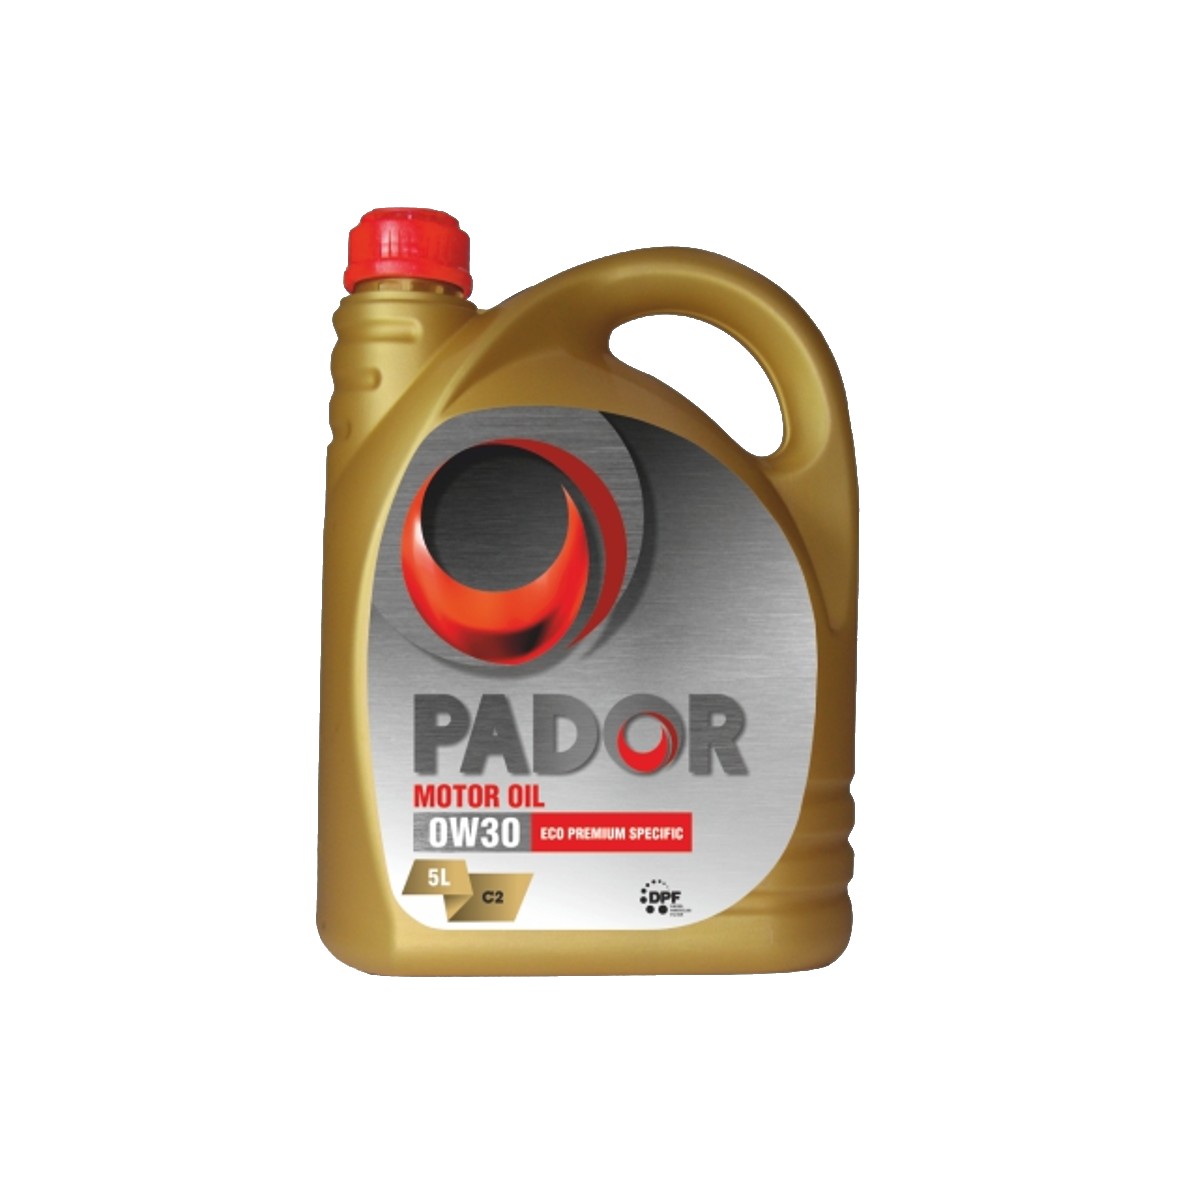 Motor Oil Pador 0W30 Eco Premium Specific C2 5L  